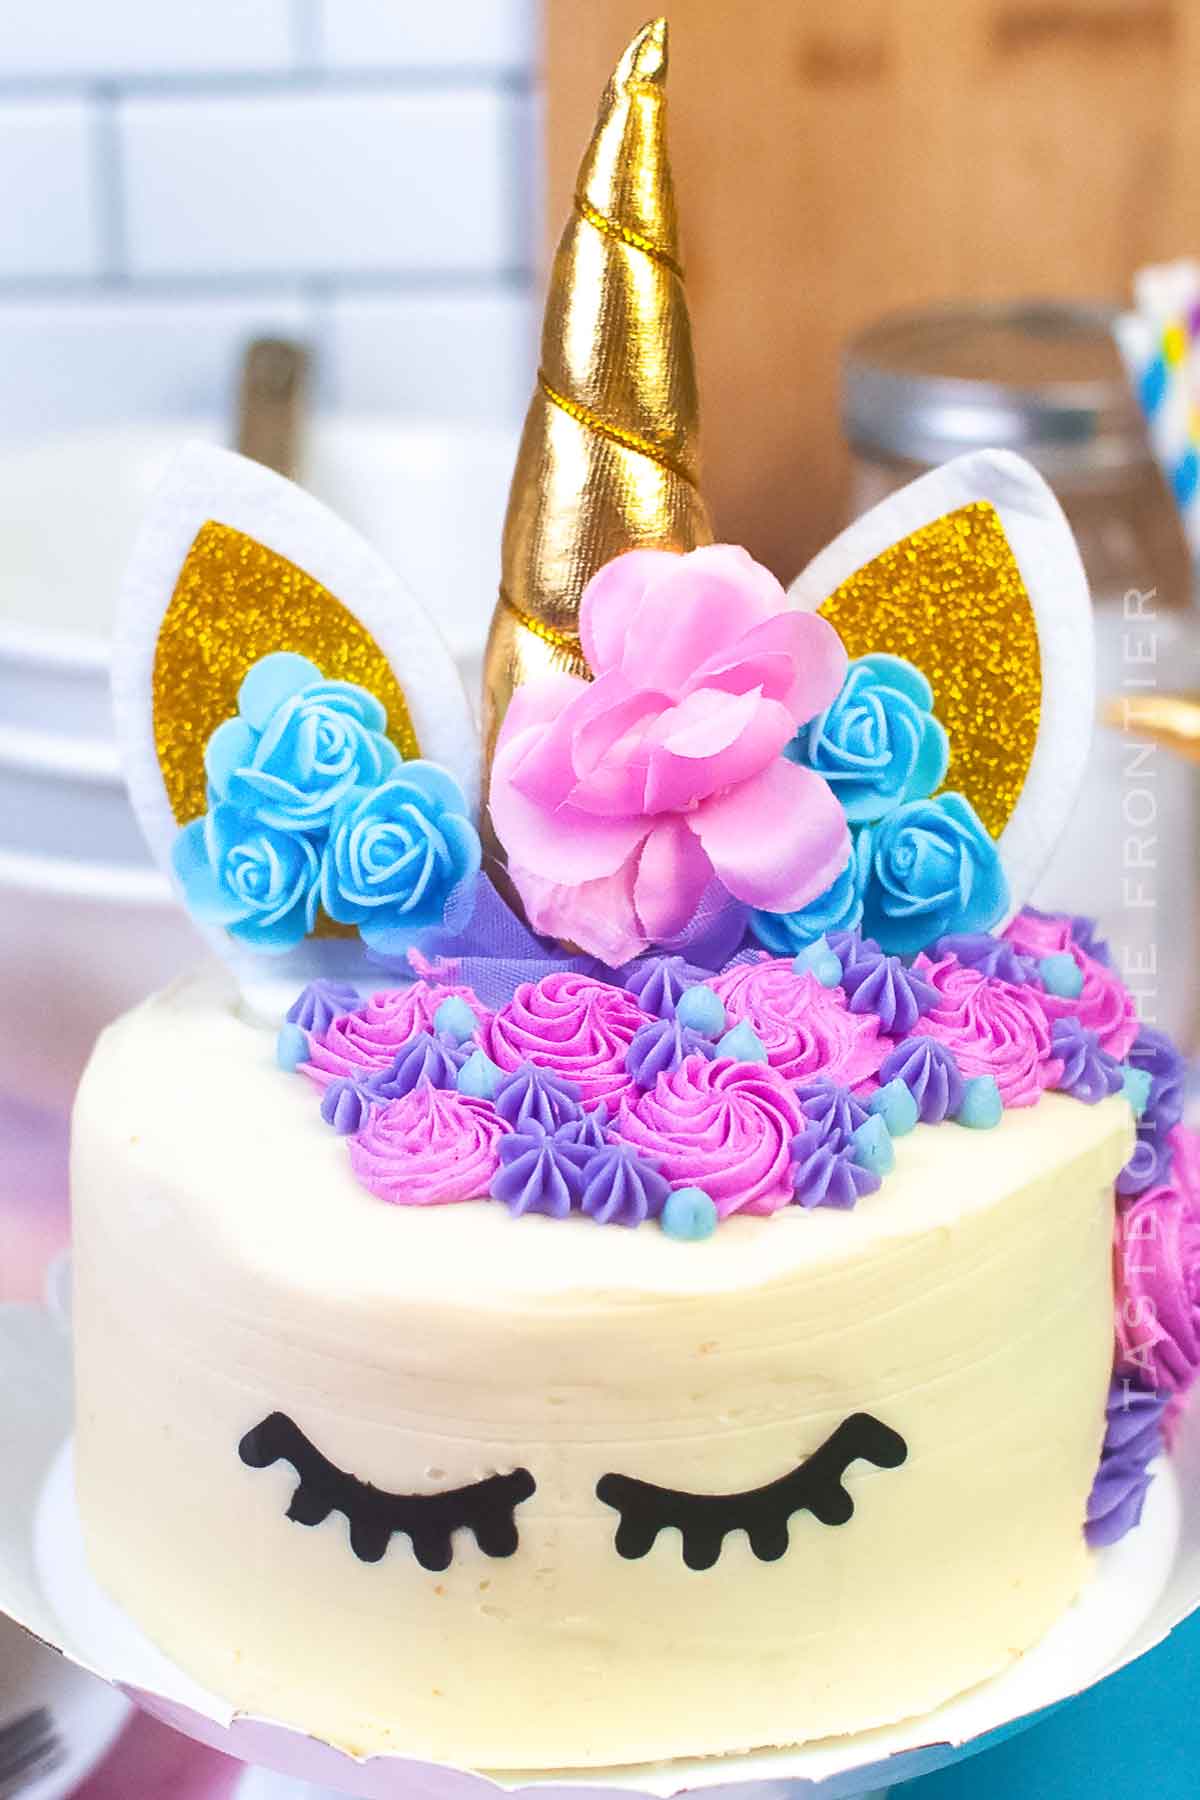 5 Whimsical Unicorn Cake Ideas | Wilton's Baking Blog | Homemade Cake &  Other Baking Recipes